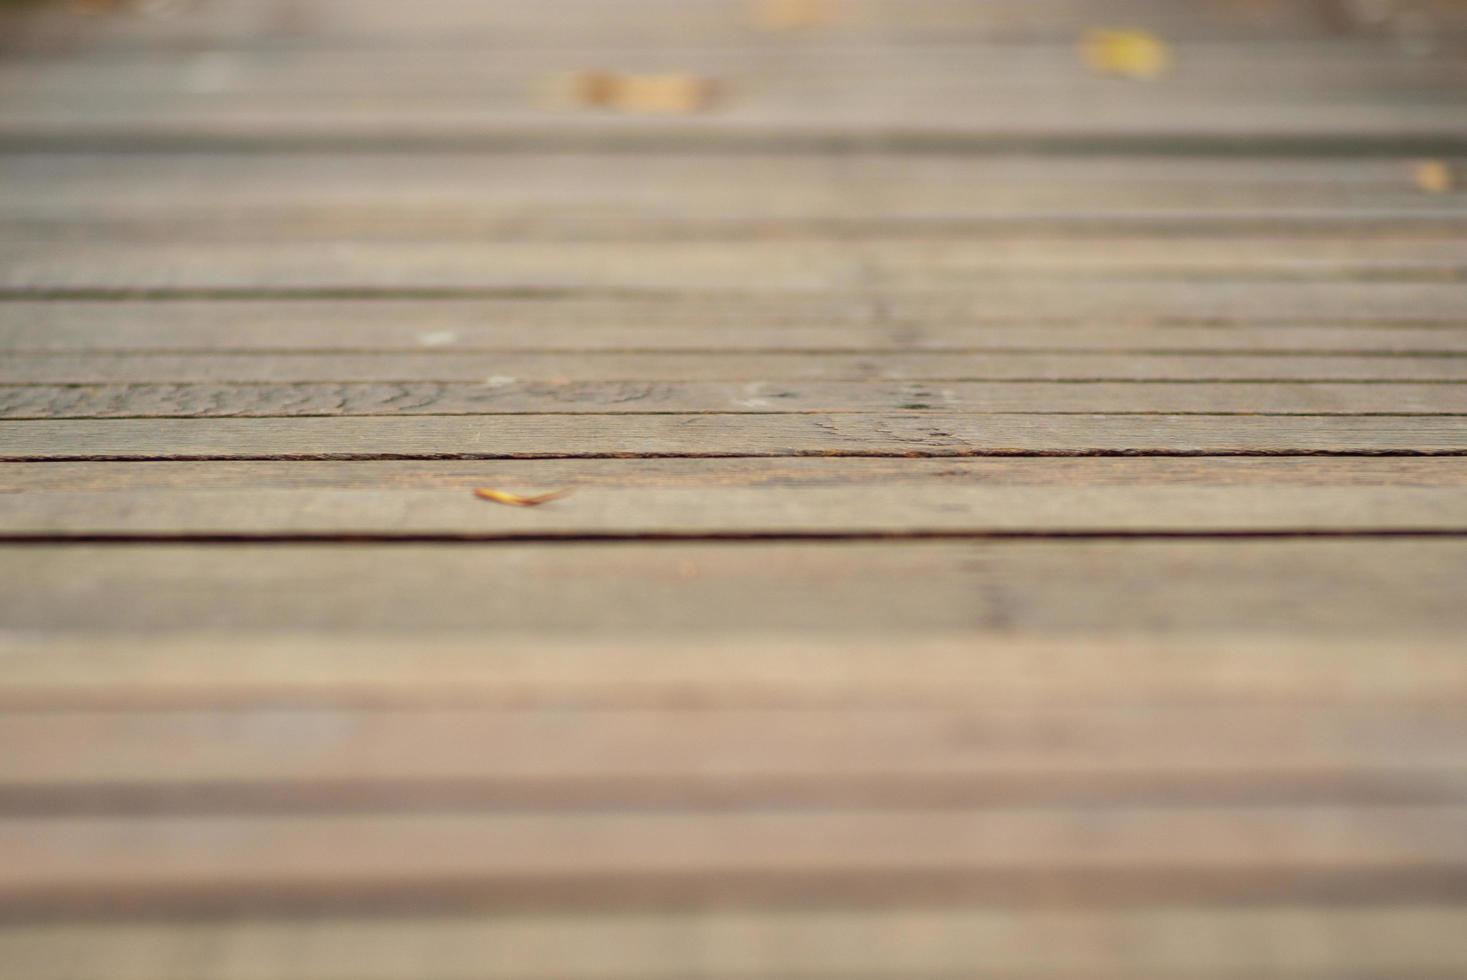 textura abstrata e fundo de passarela de madeira com folhas desfocadas no chão foto